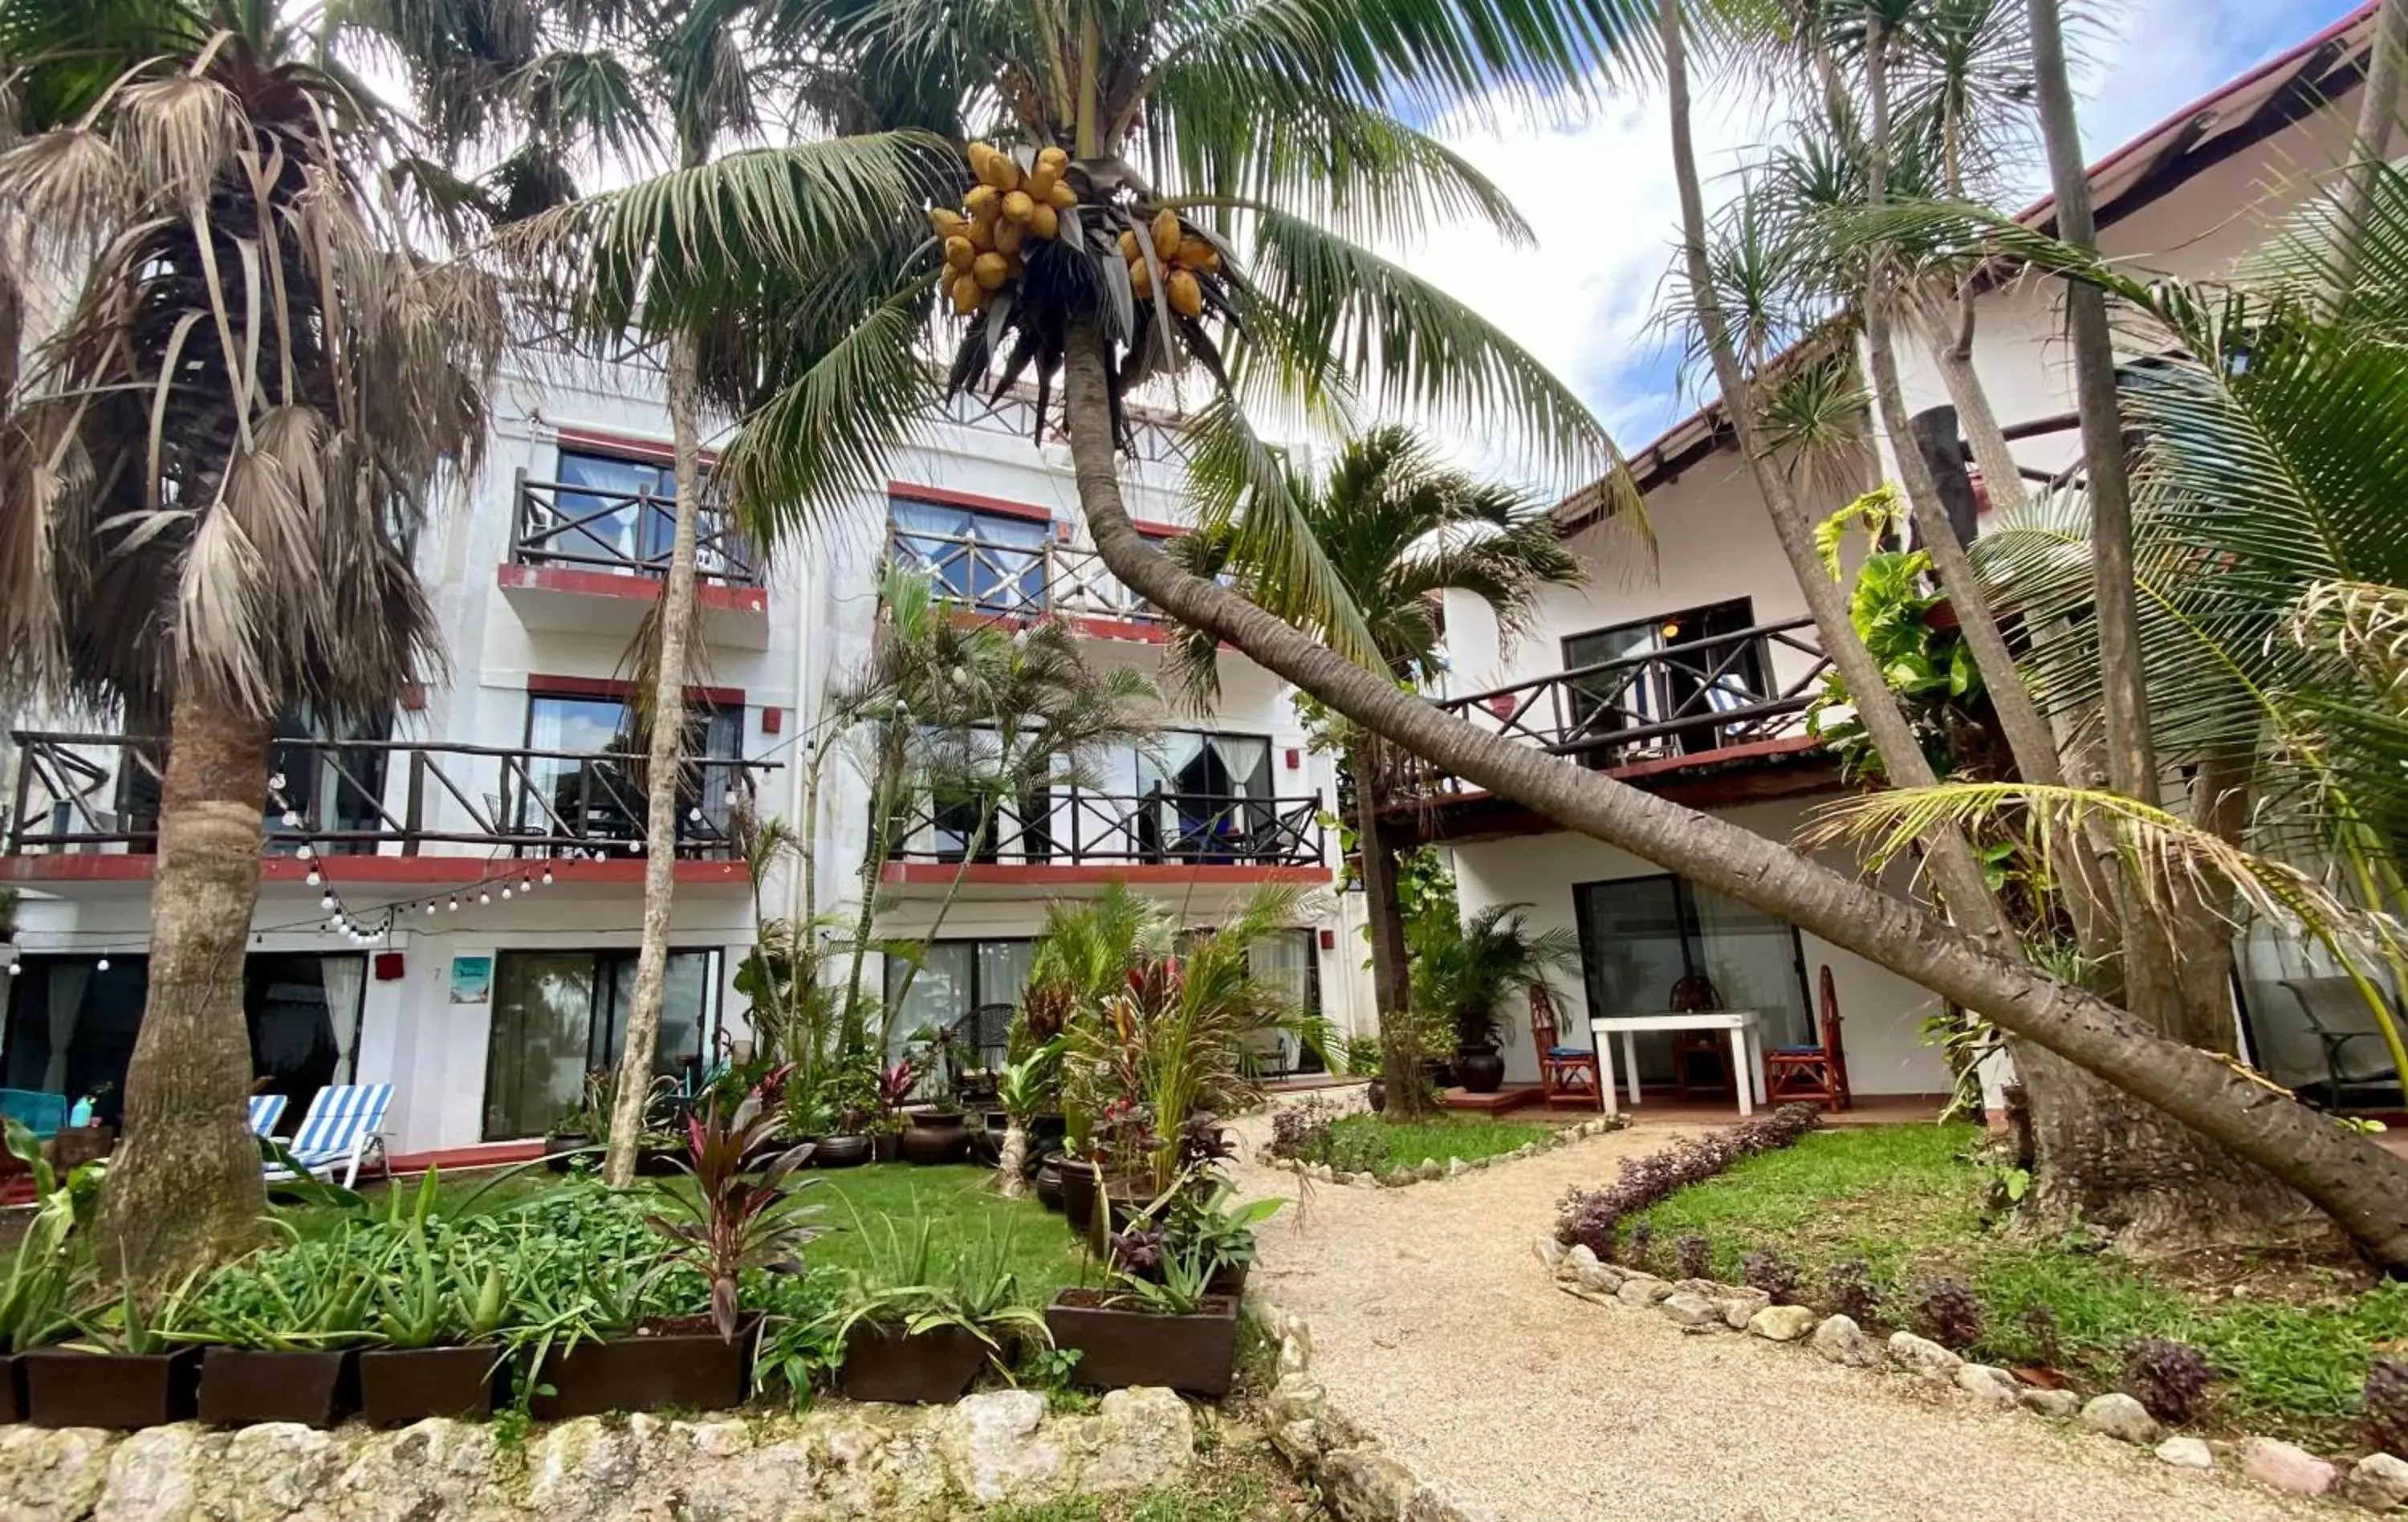 Property Building in Casa Caribe Cancun